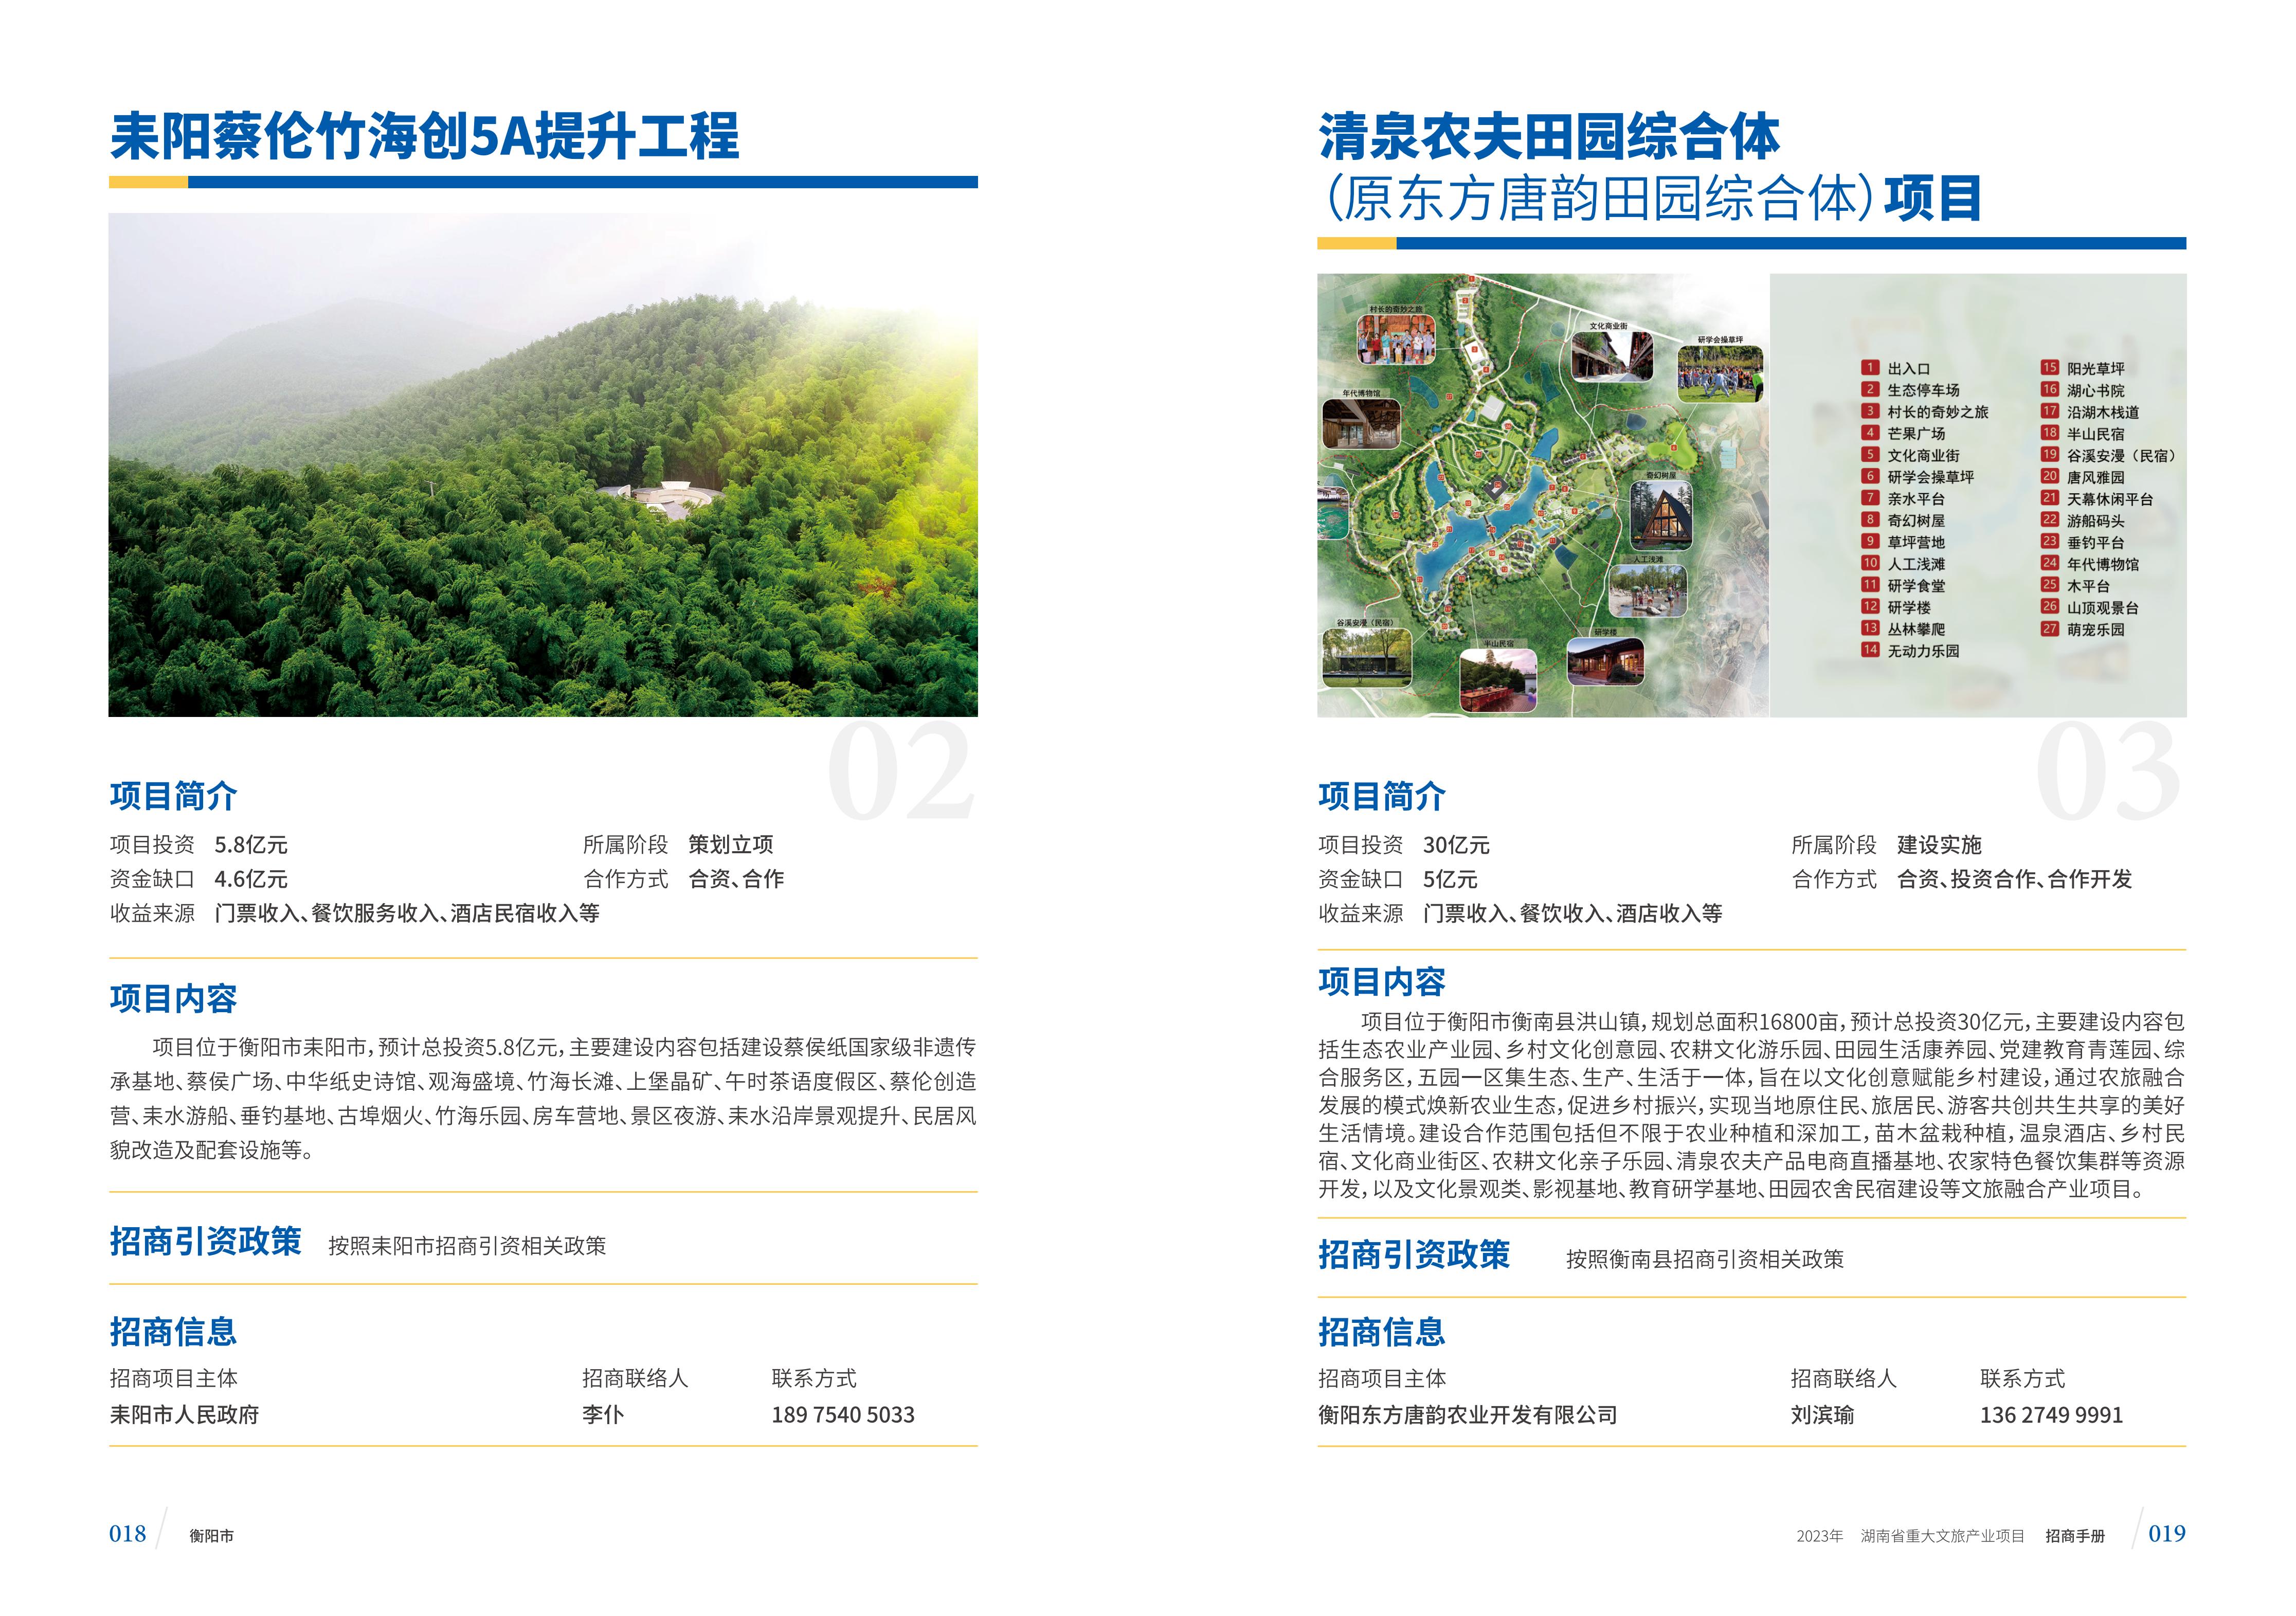 湖南省重大文旅产业项目招手册线上链接版_17.jpg